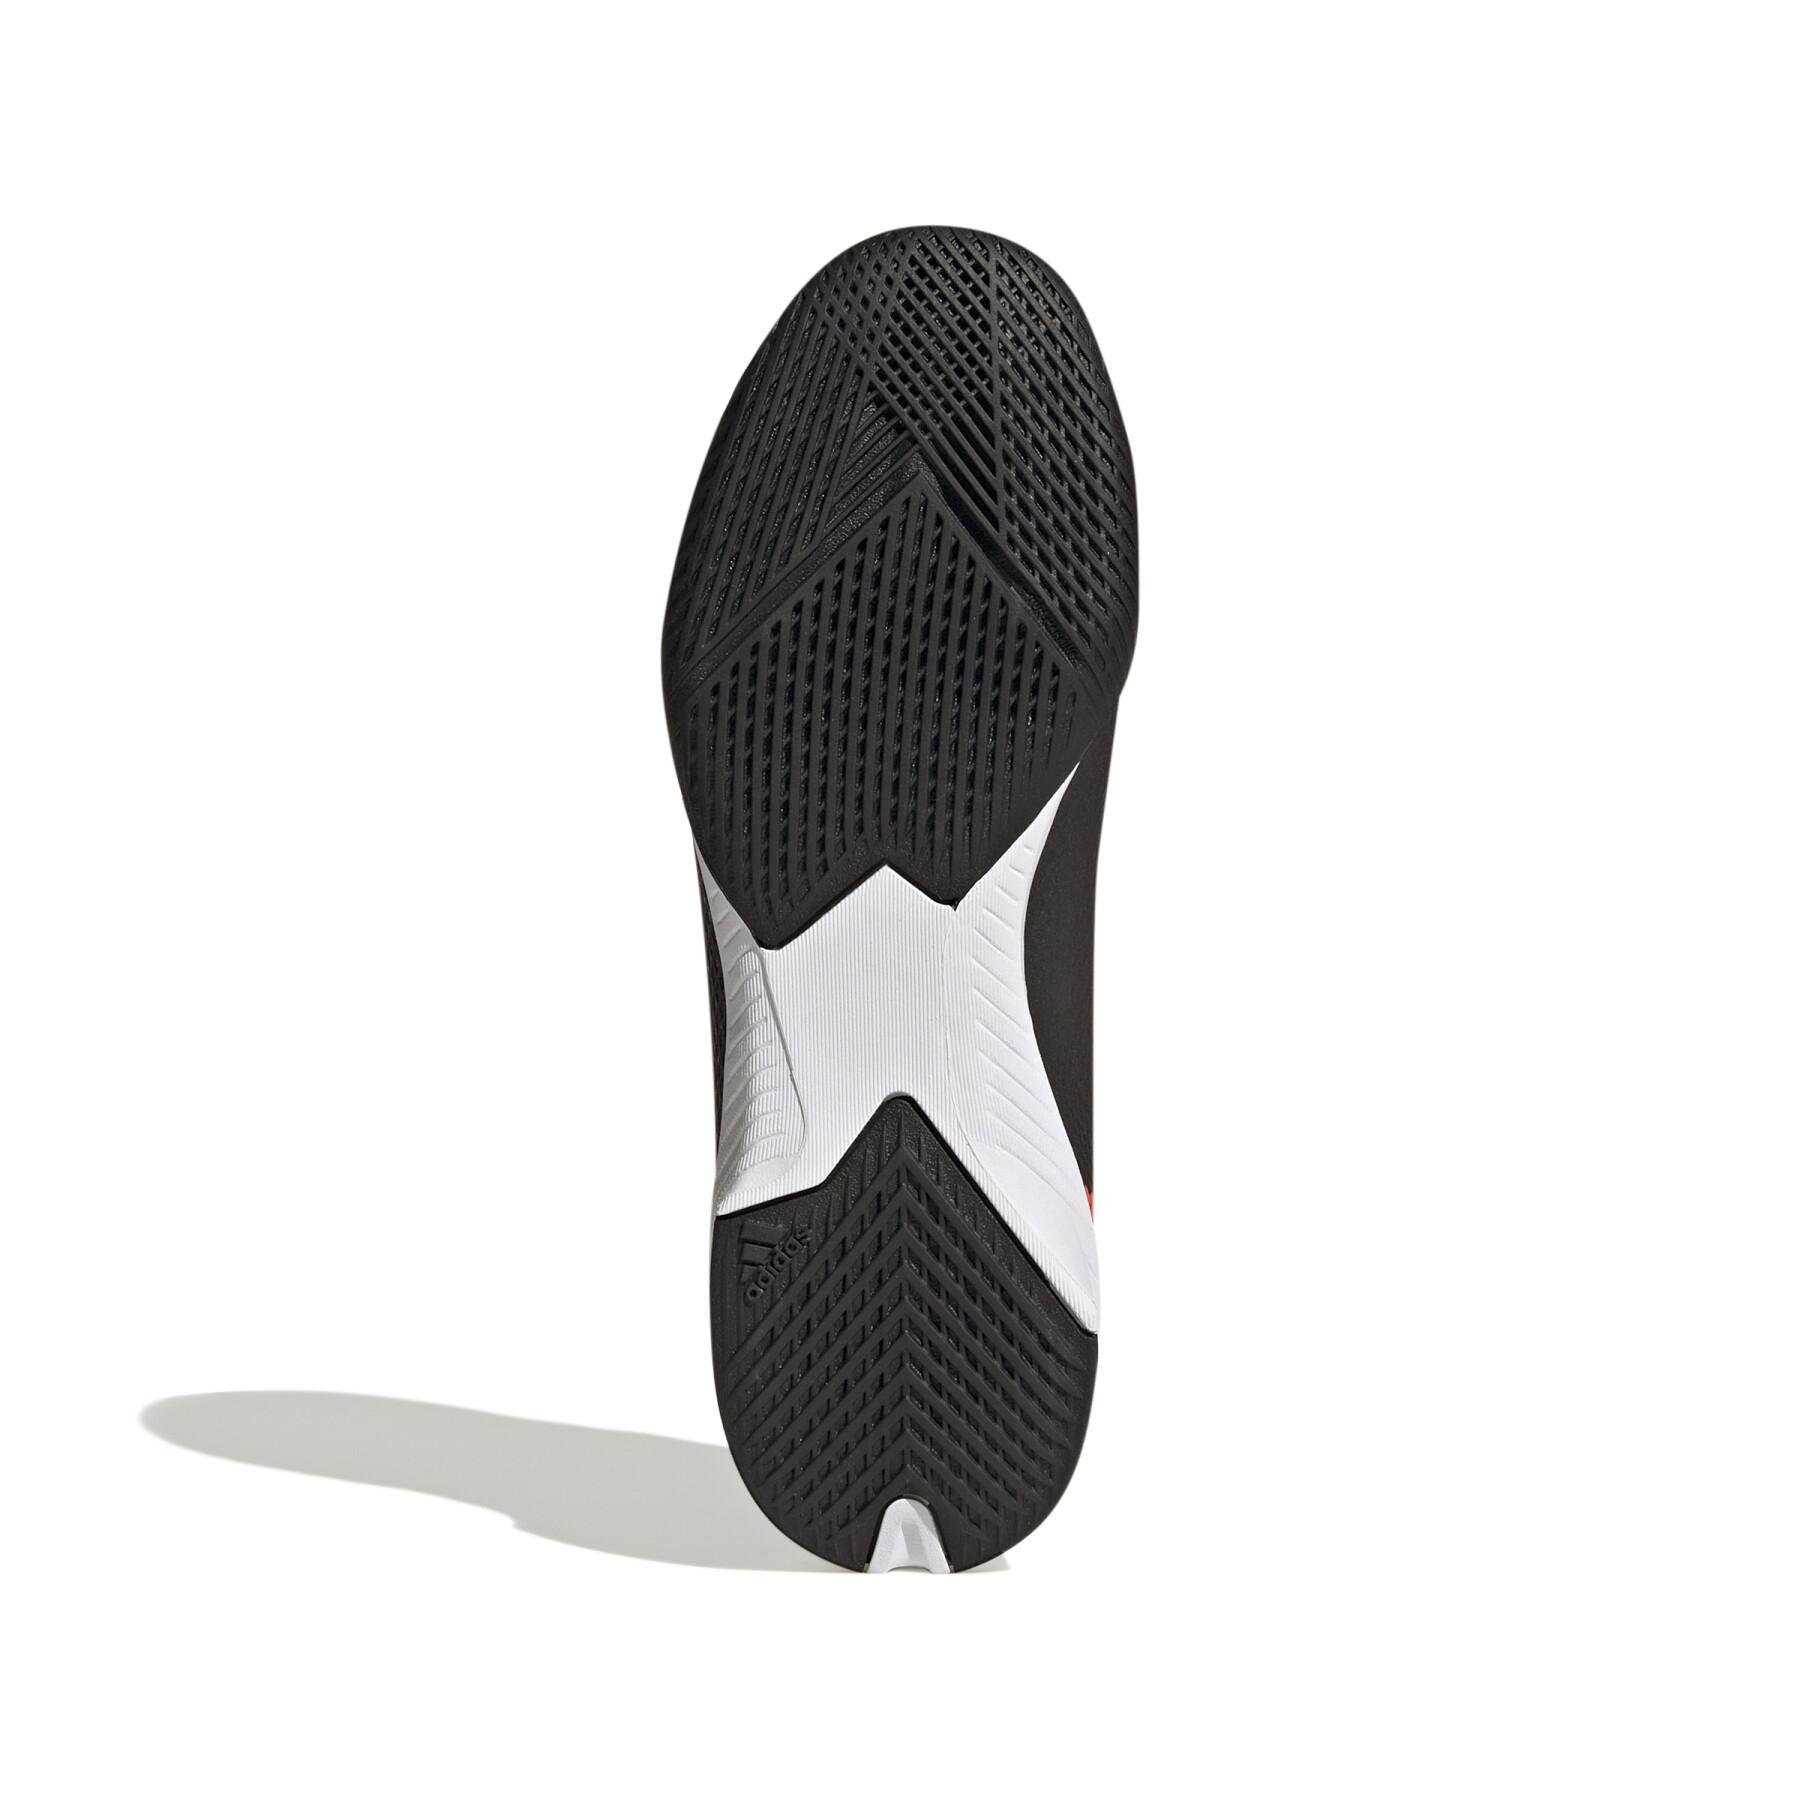 Fotbollsskor för barn adidas X Speedportal.3 IN